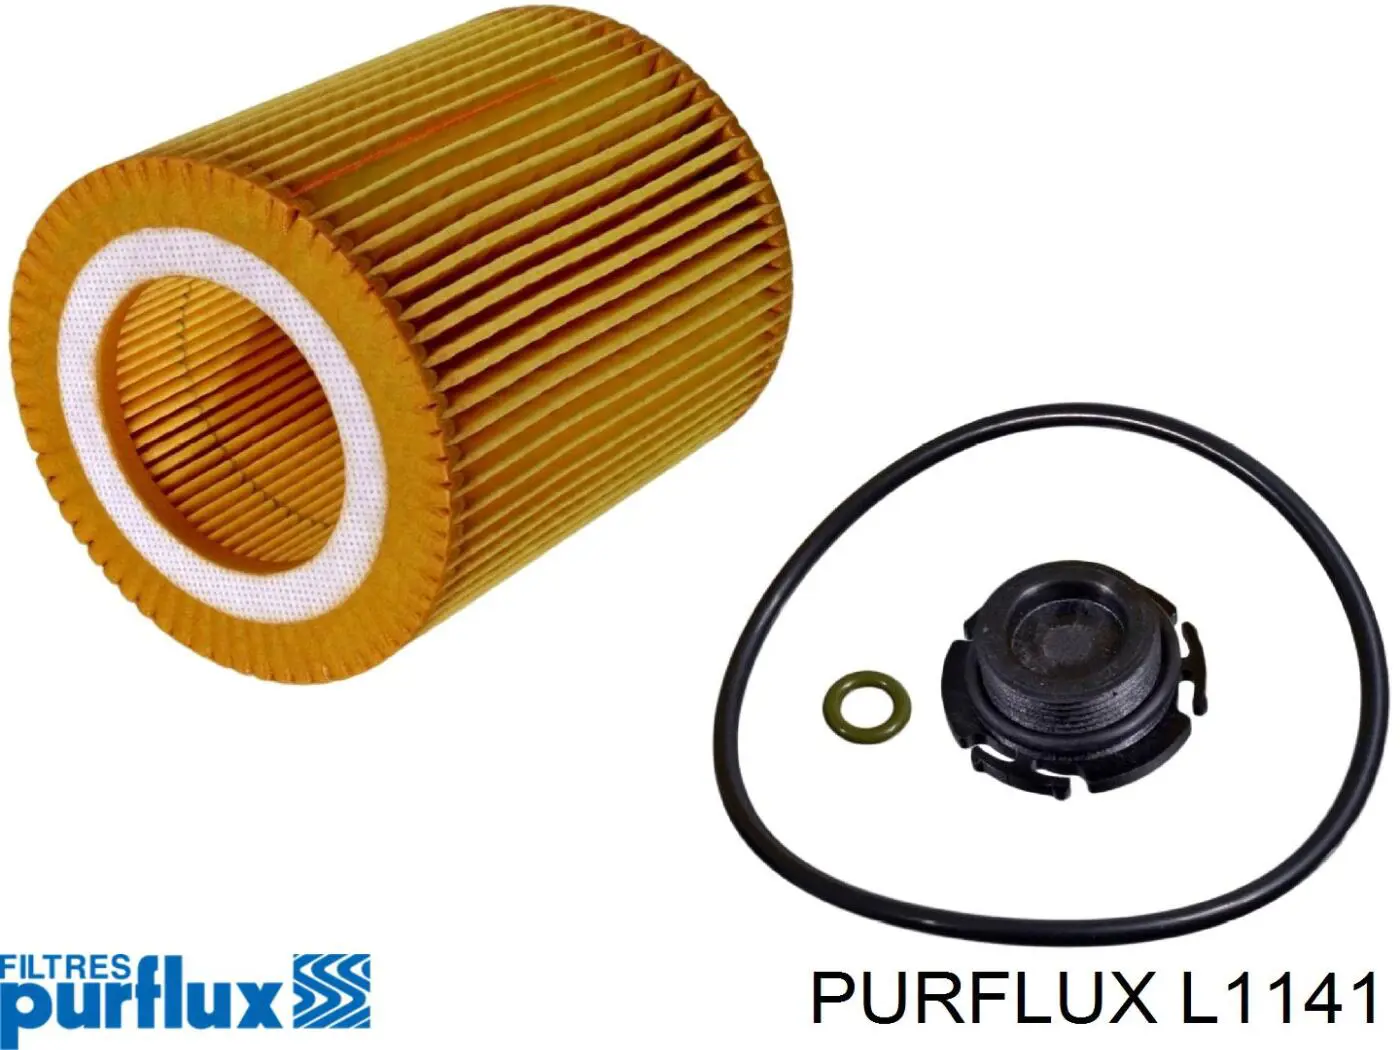 L1141 Purflux filtro de aceite